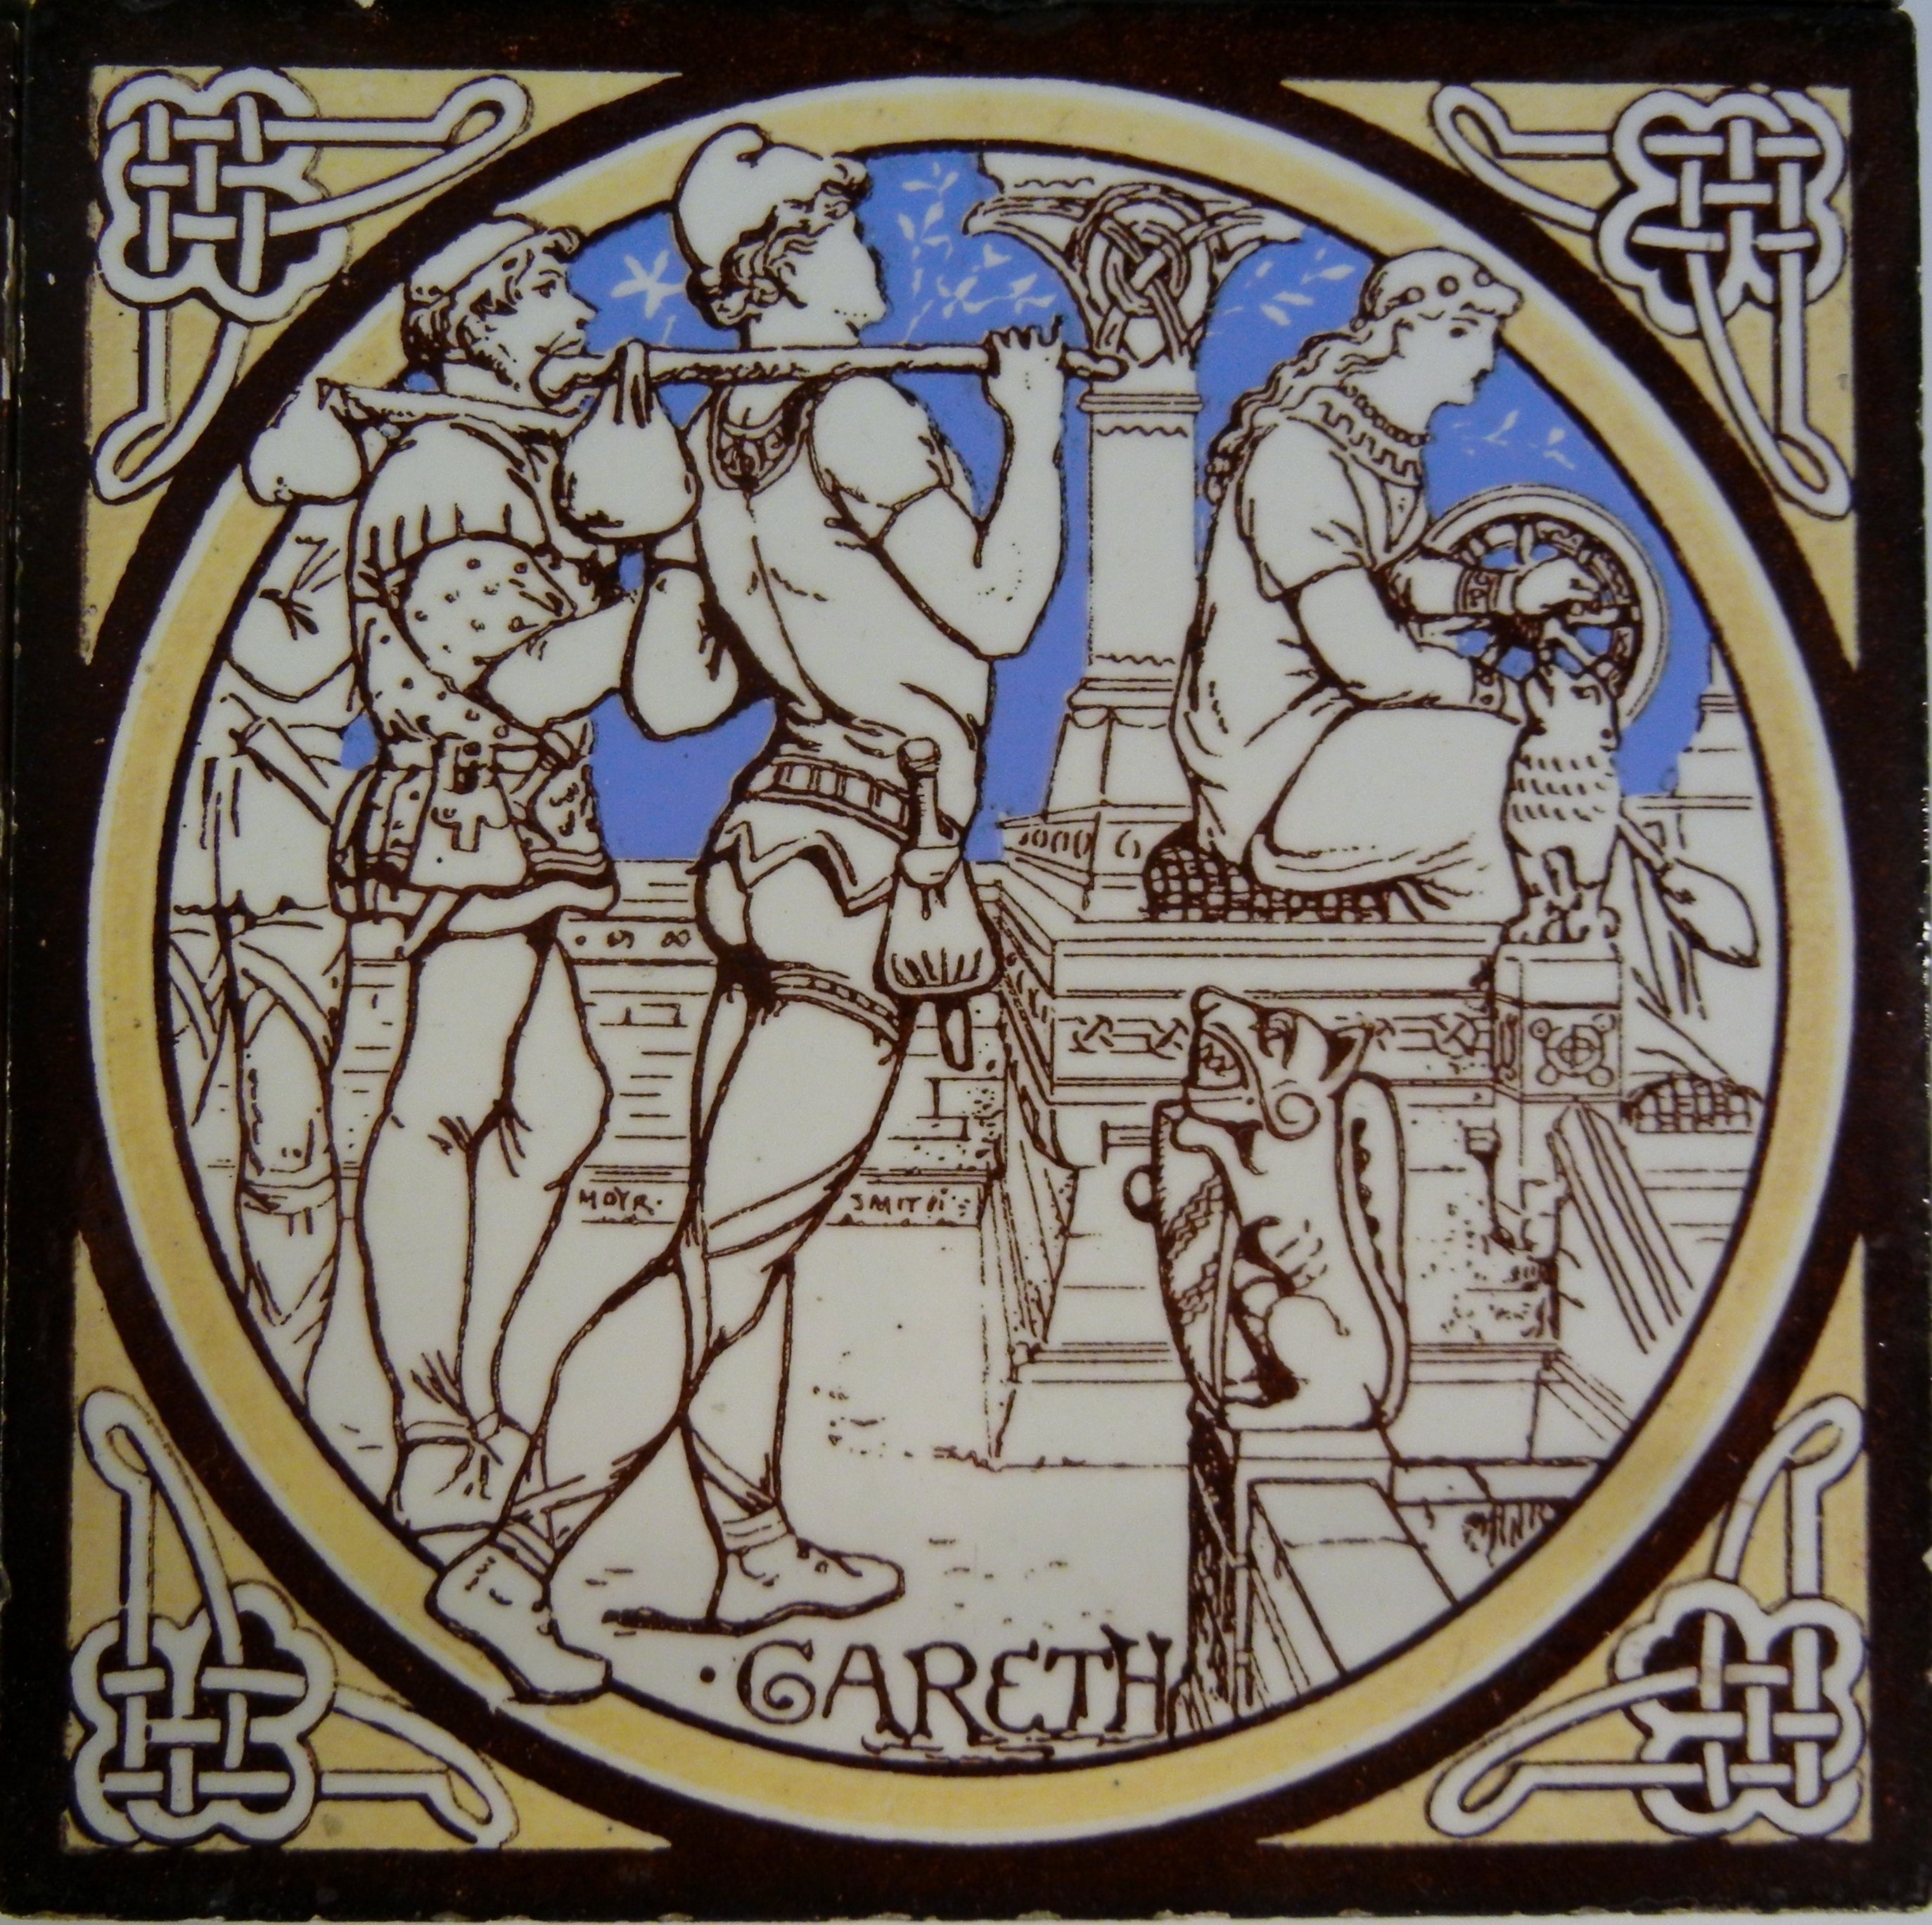 8 Different Minton Tiles by John Moyr Smith Depicting Malory's Le Morte d'Arthur